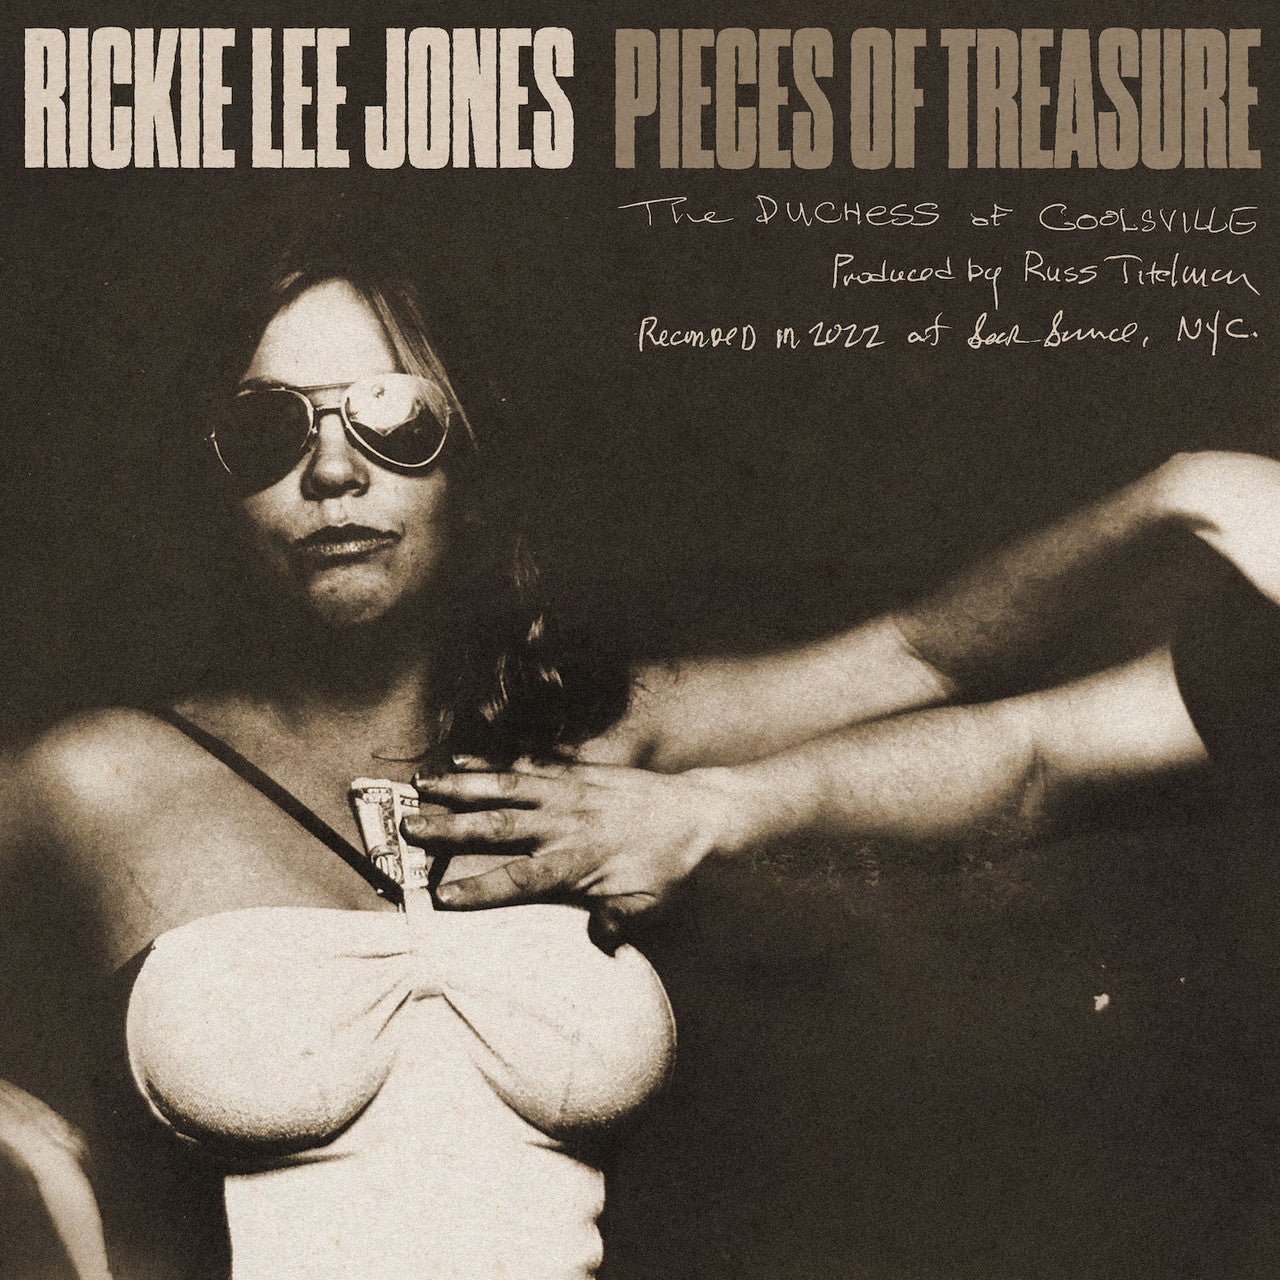 RICKIE LEE JONES 'PIECES OF TREASURE' LP